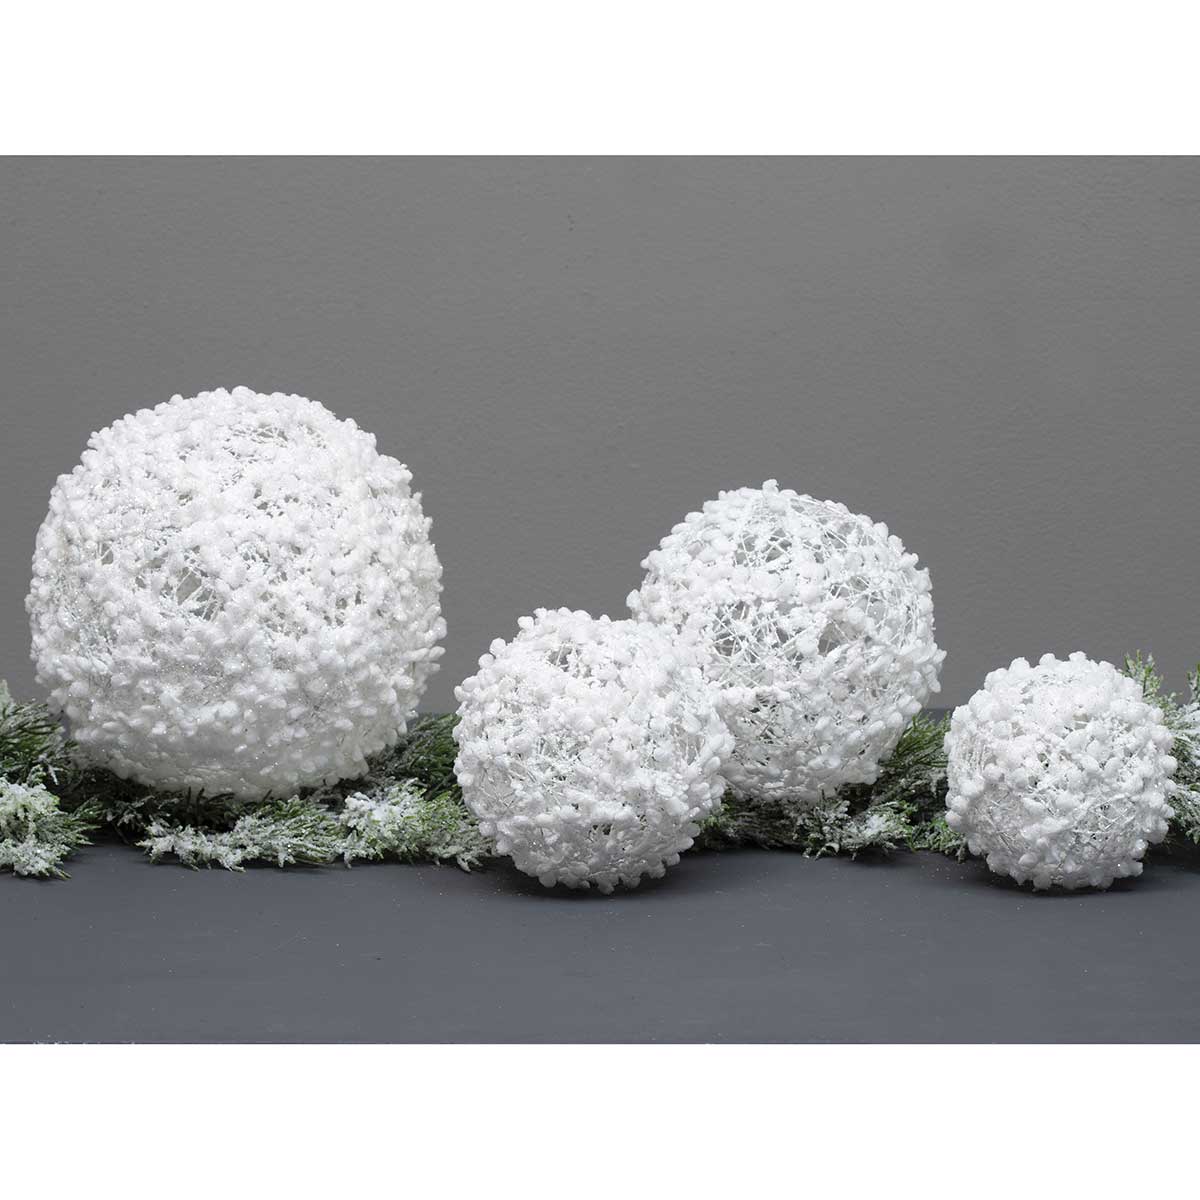 BALL PUFF BALL ORNAMENT SMALL 4IN WHITE GLITTER/MICA